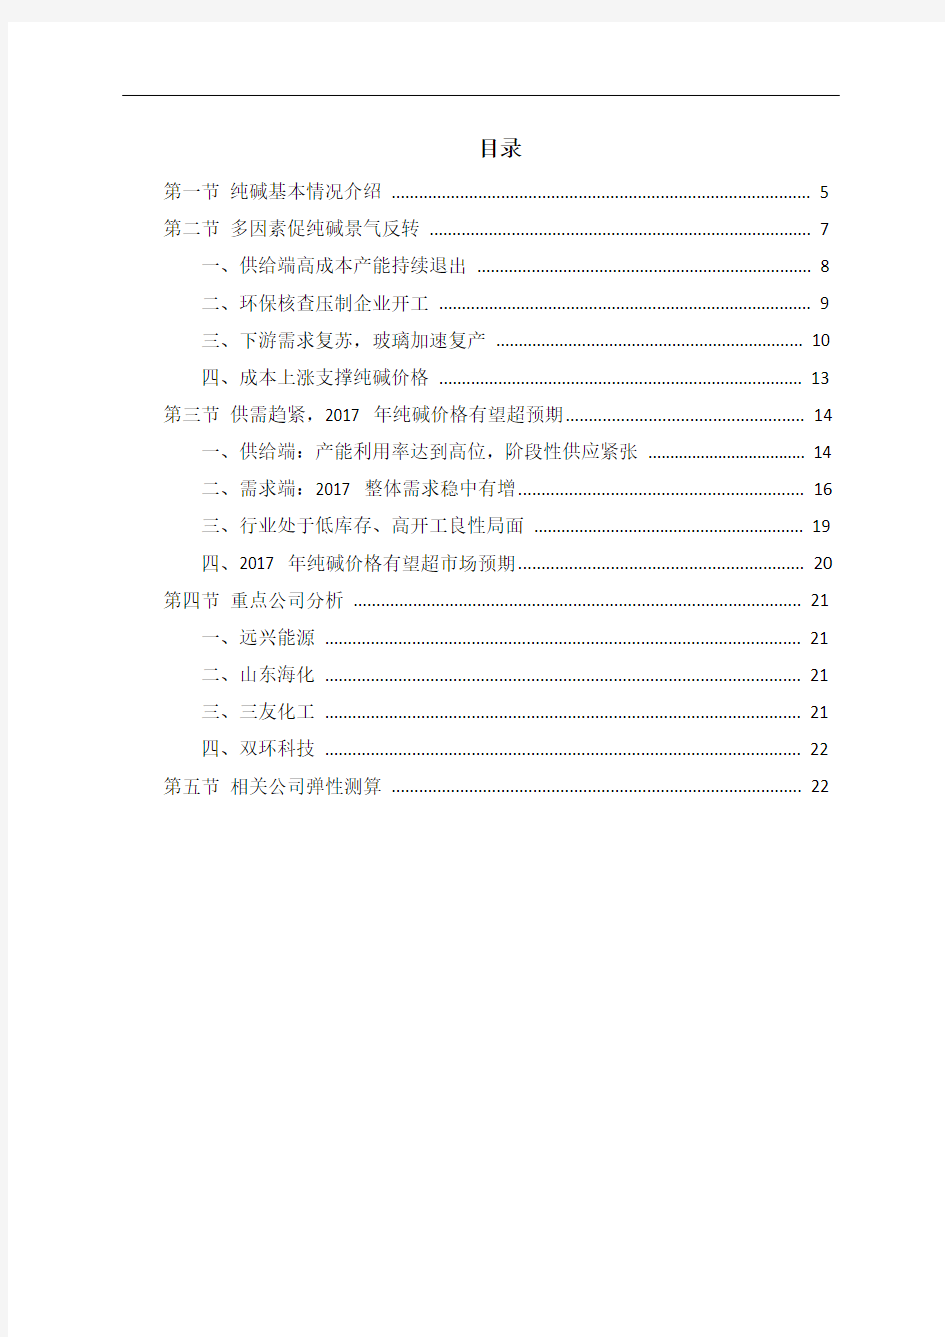 中国纯碱市场投资调研分析报告